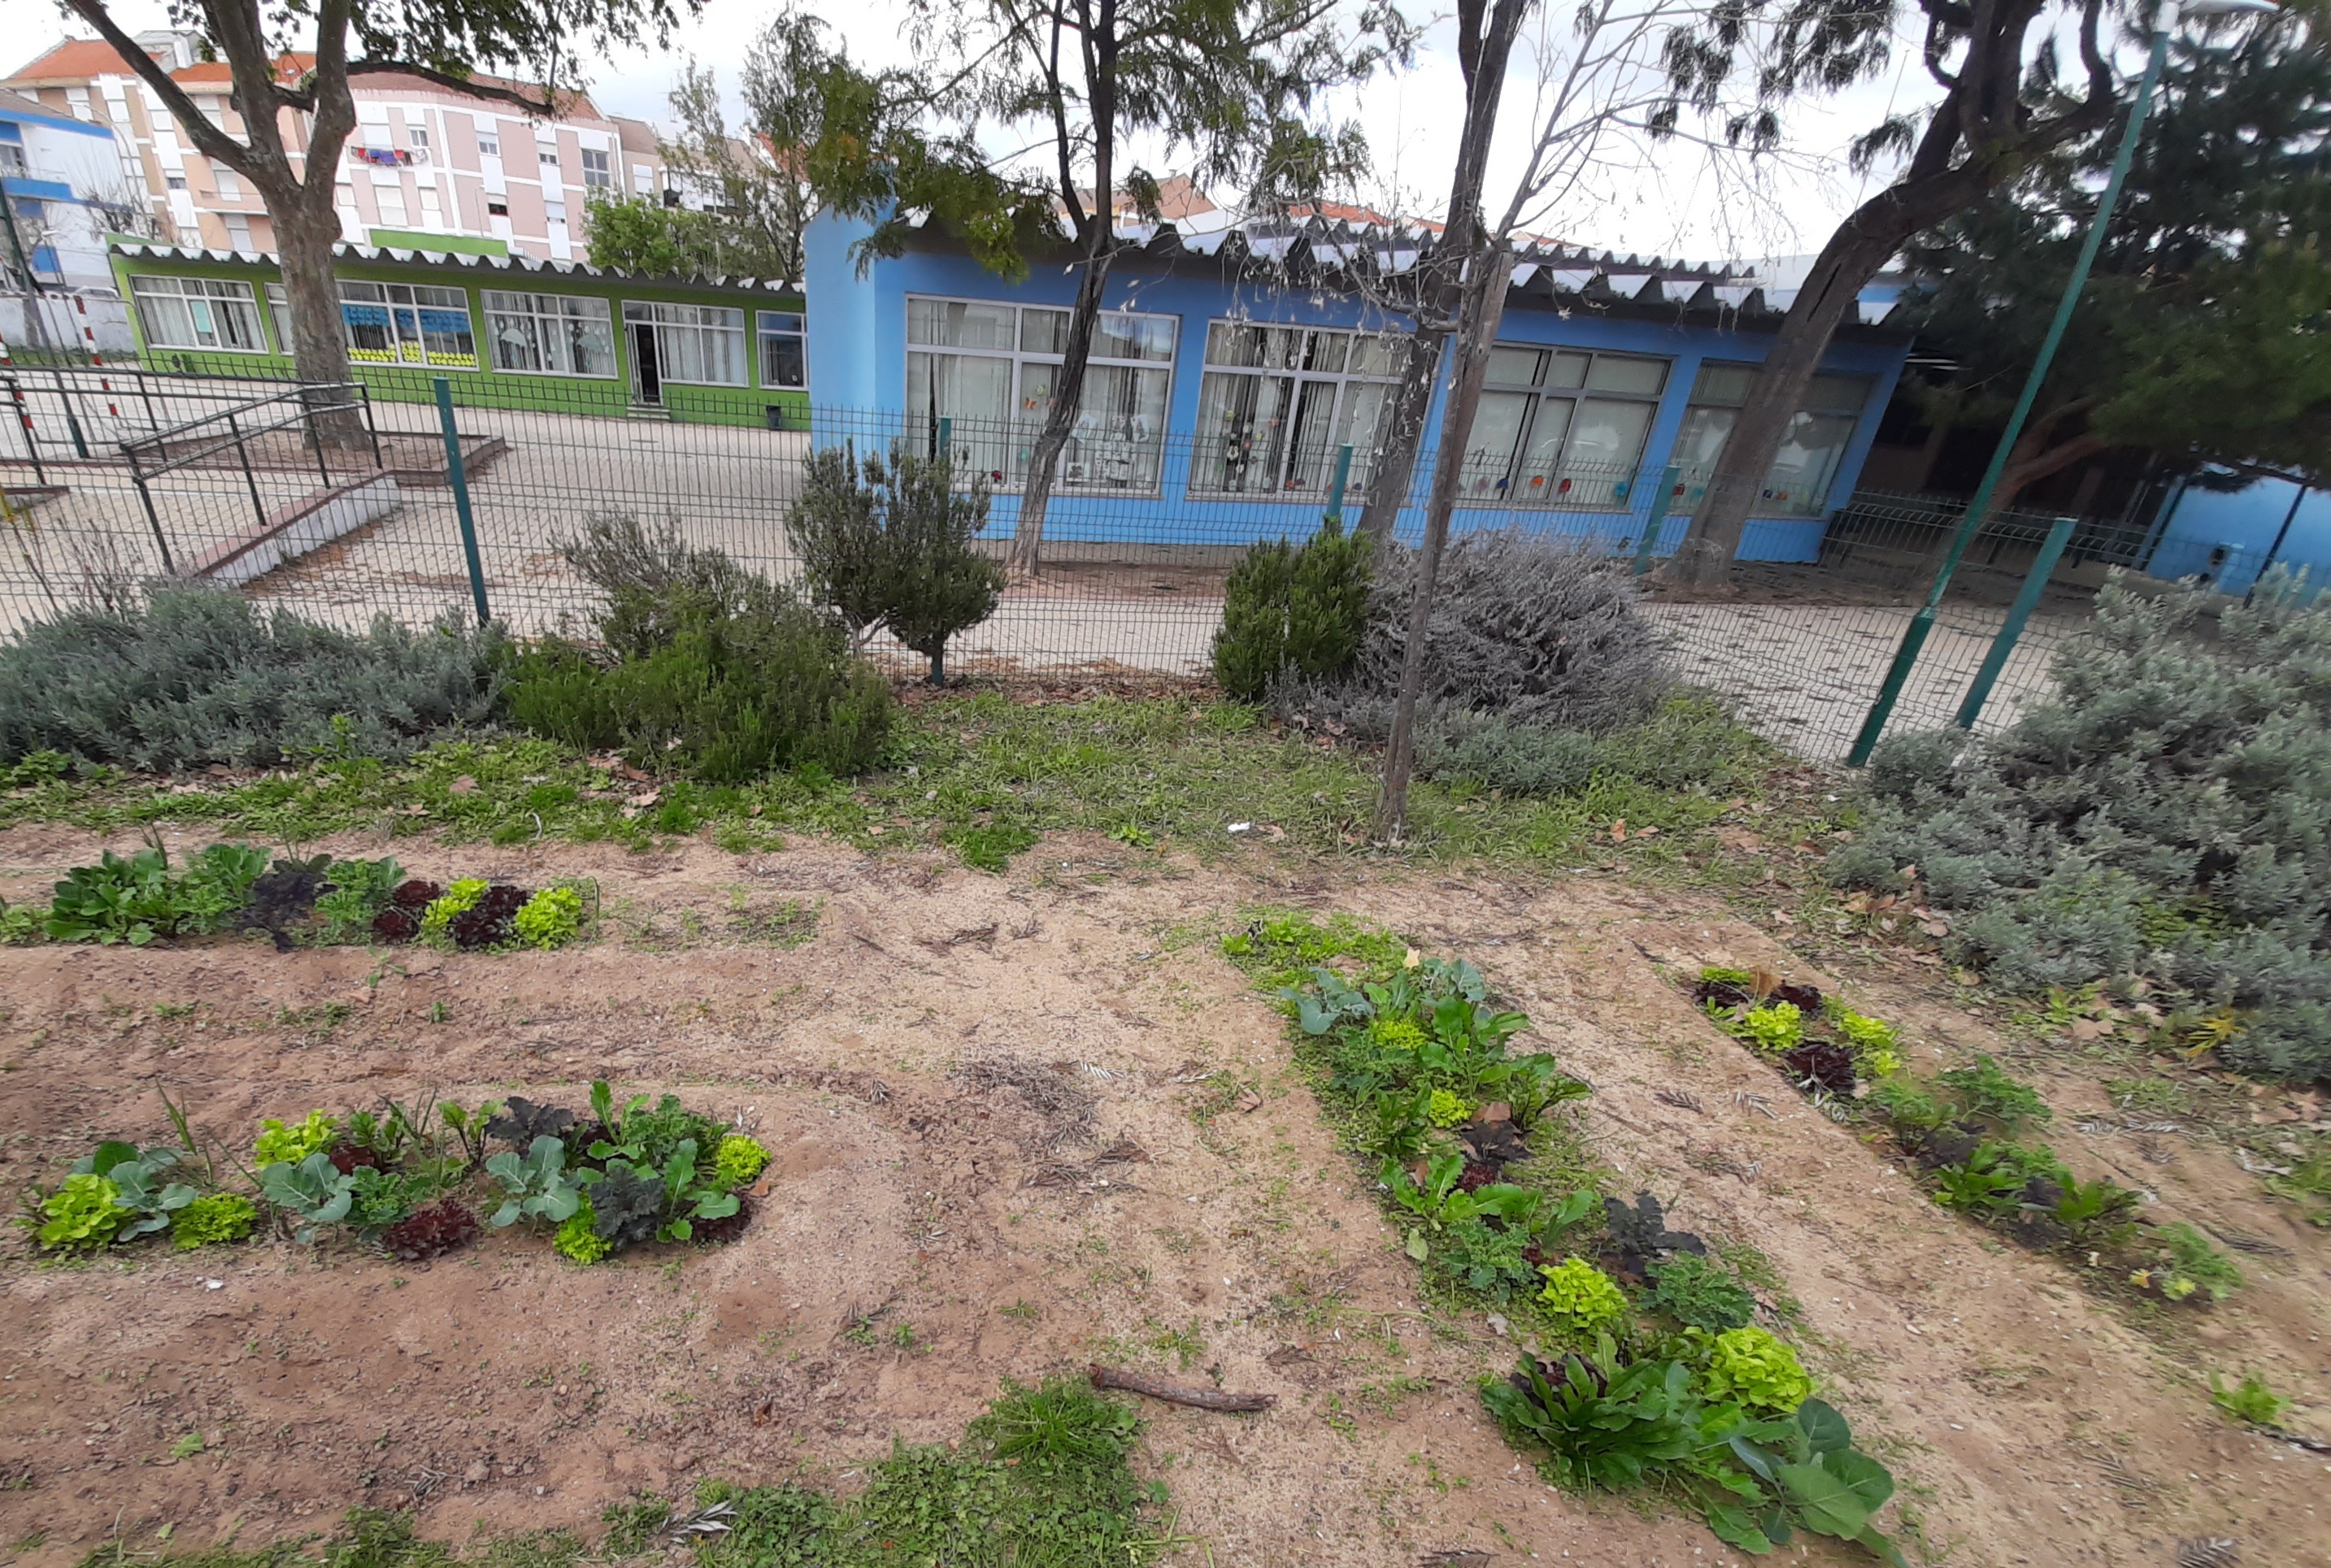 Com as mãos na terra...
«A horta da nossa escola, continua a ser cuidada pelos nossos meninos, que apesar de pequenos, são muito interessados e participativos. E aqui estão os nossos legumes saudáveis a crescerem felizes! »